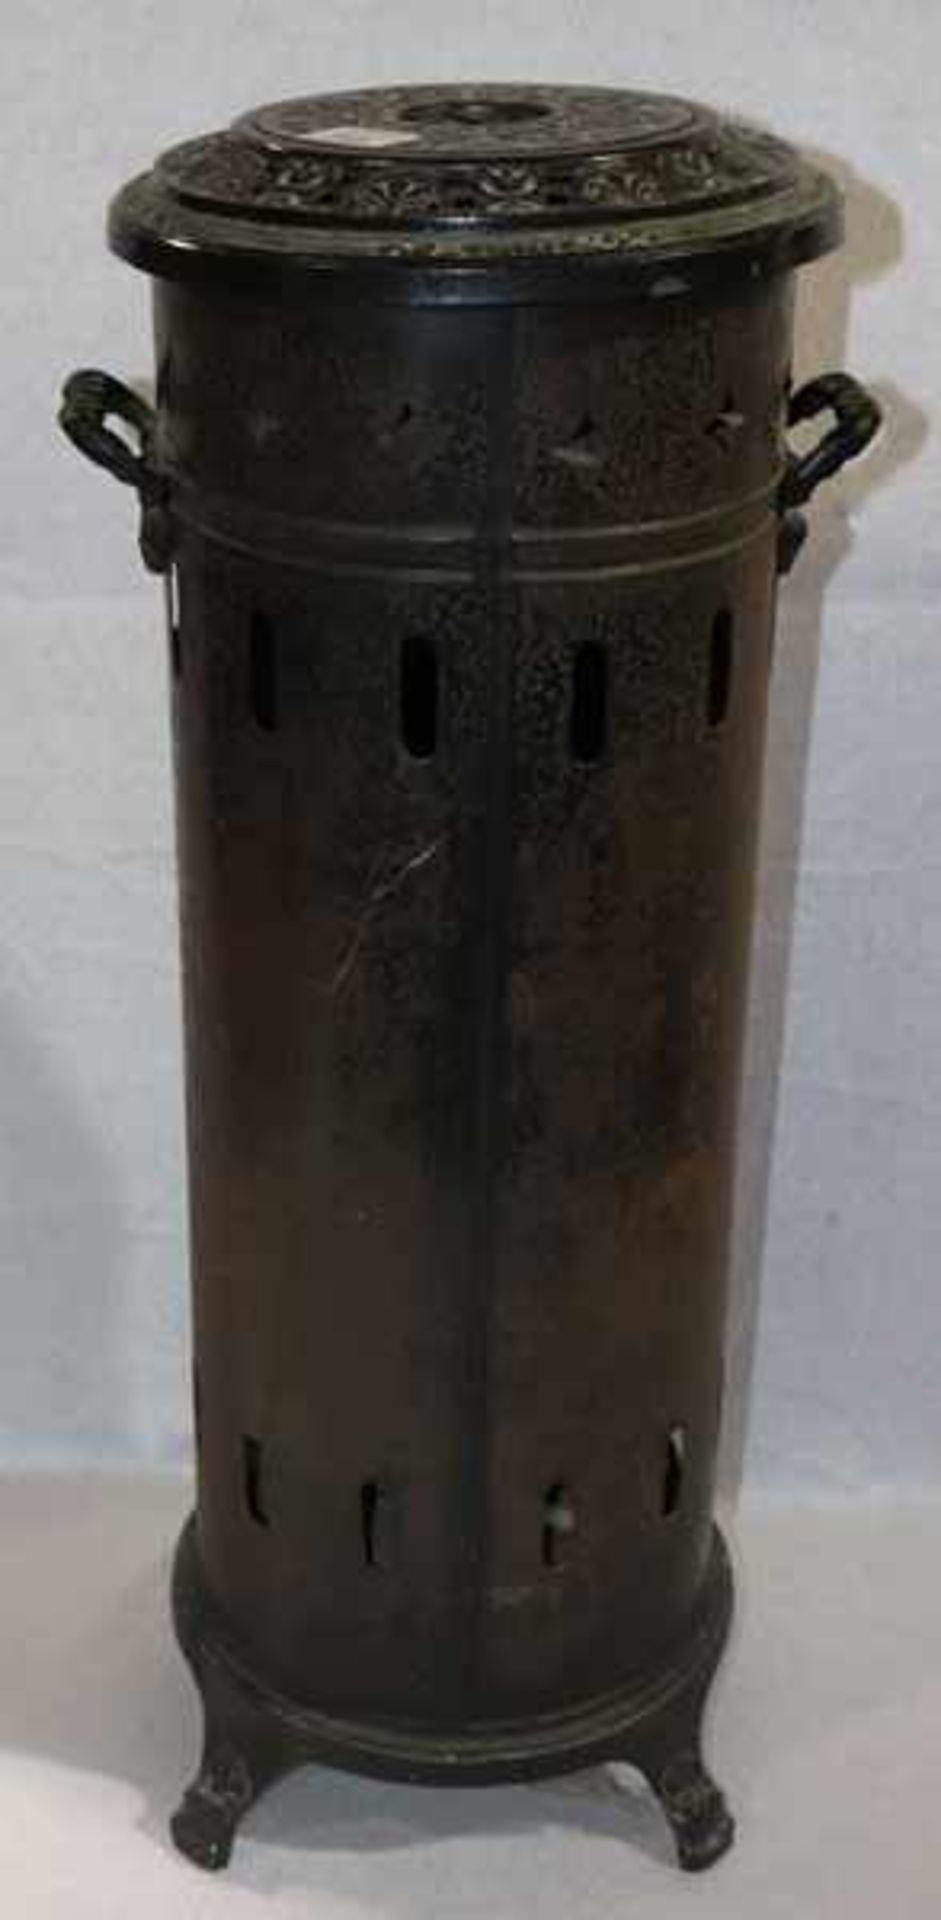 Metall Ofen emailliert, um 1900, H 72 cm, D 25 cm, Alters- und Gebrauchsspuren